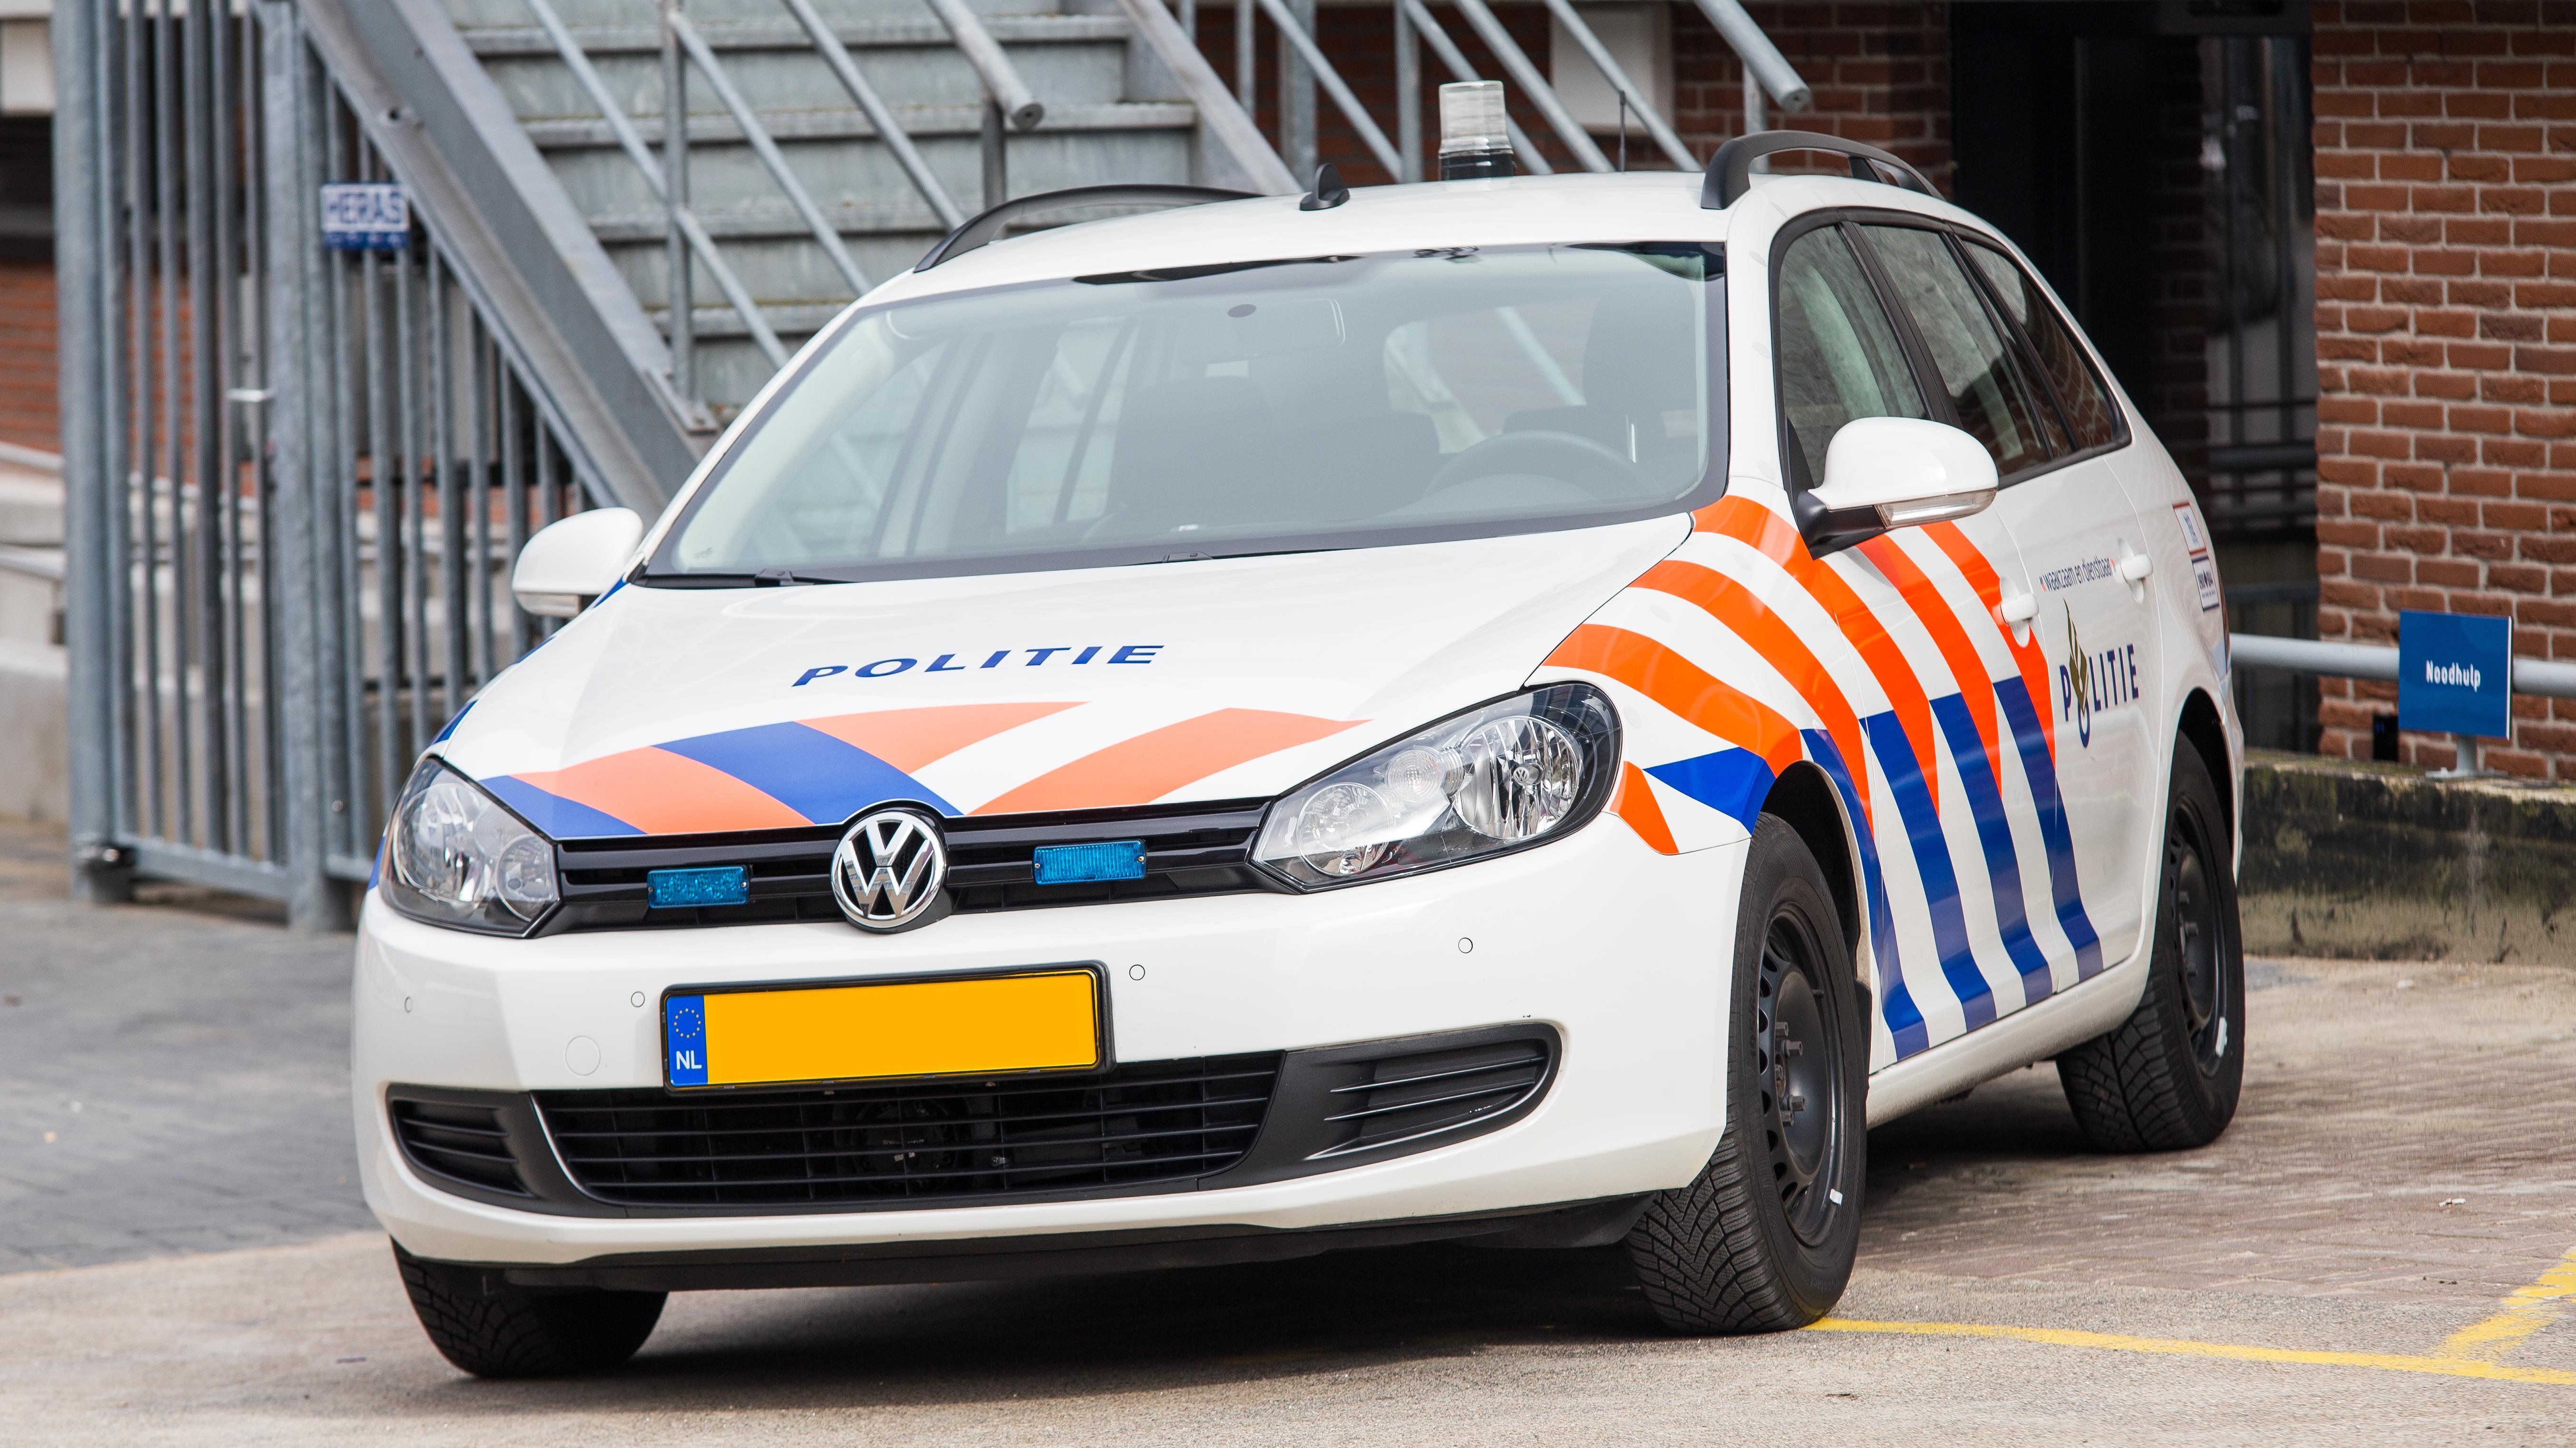 Politie arresteert twee mannen uit Deventer voor diefstal van zitgrasmaaier